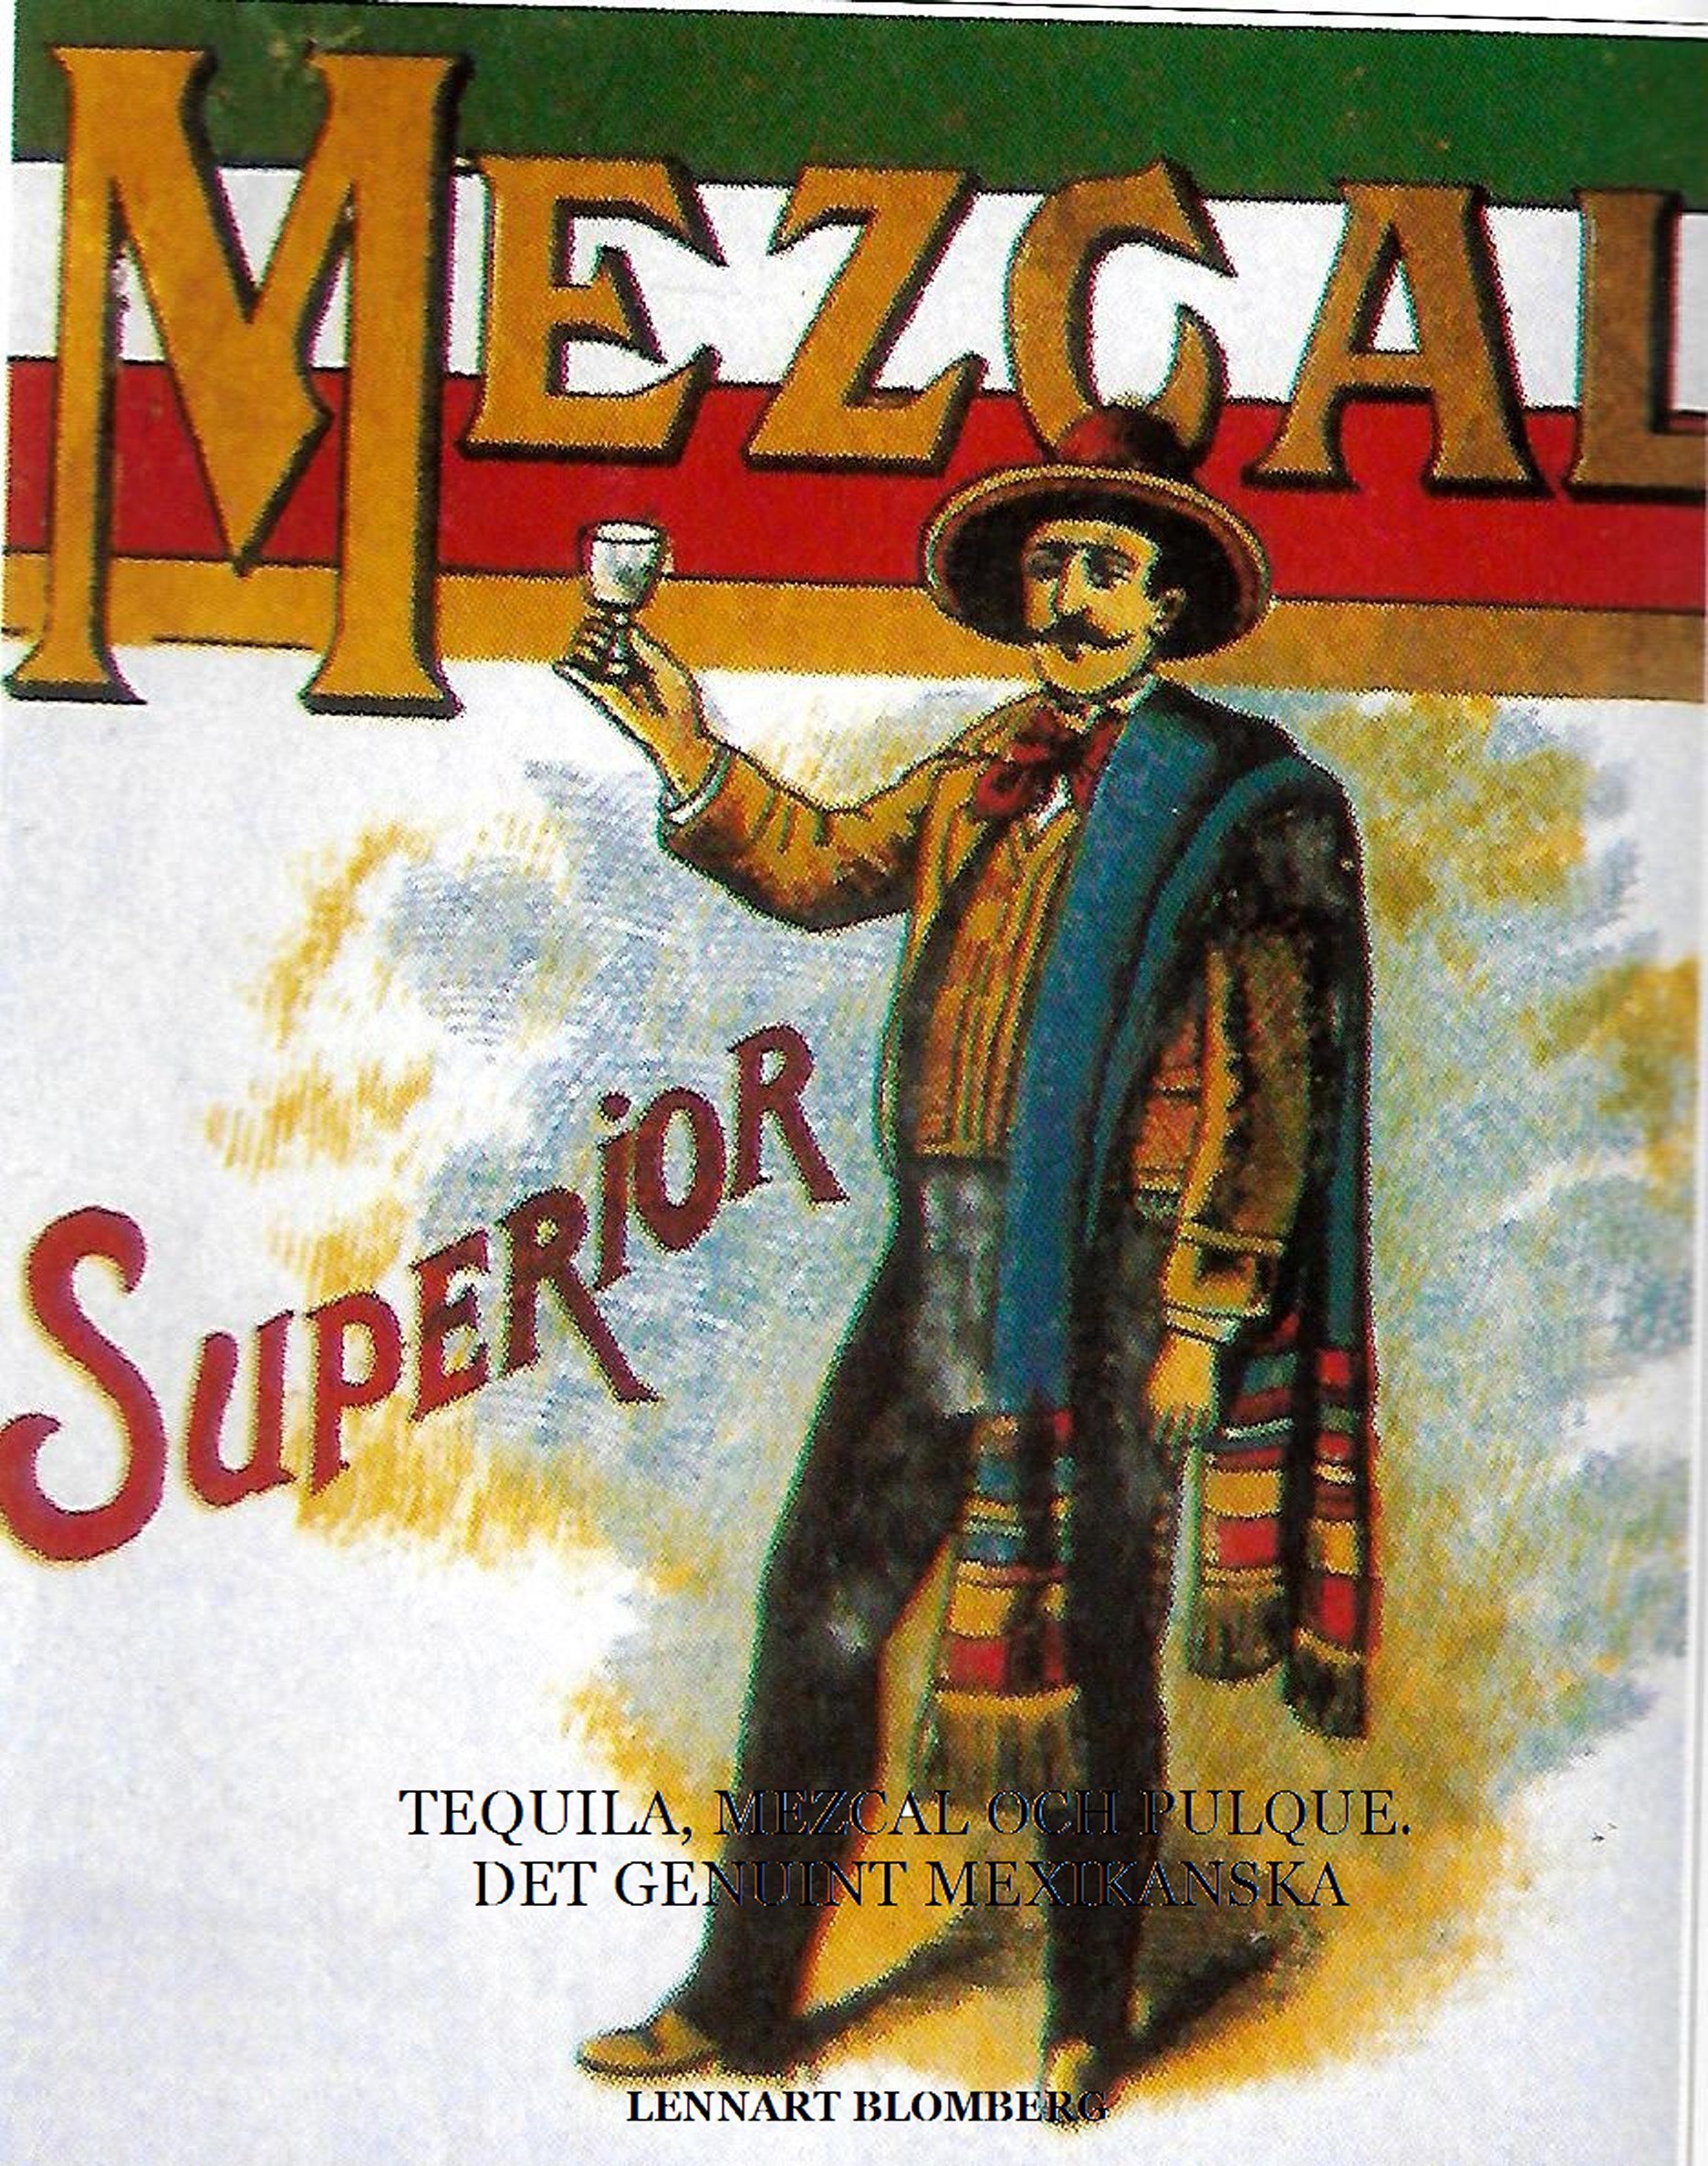 Tequila, Mezcal och Pulque. Det genuint Mexikanska, e-bok av Lennart Blomberg